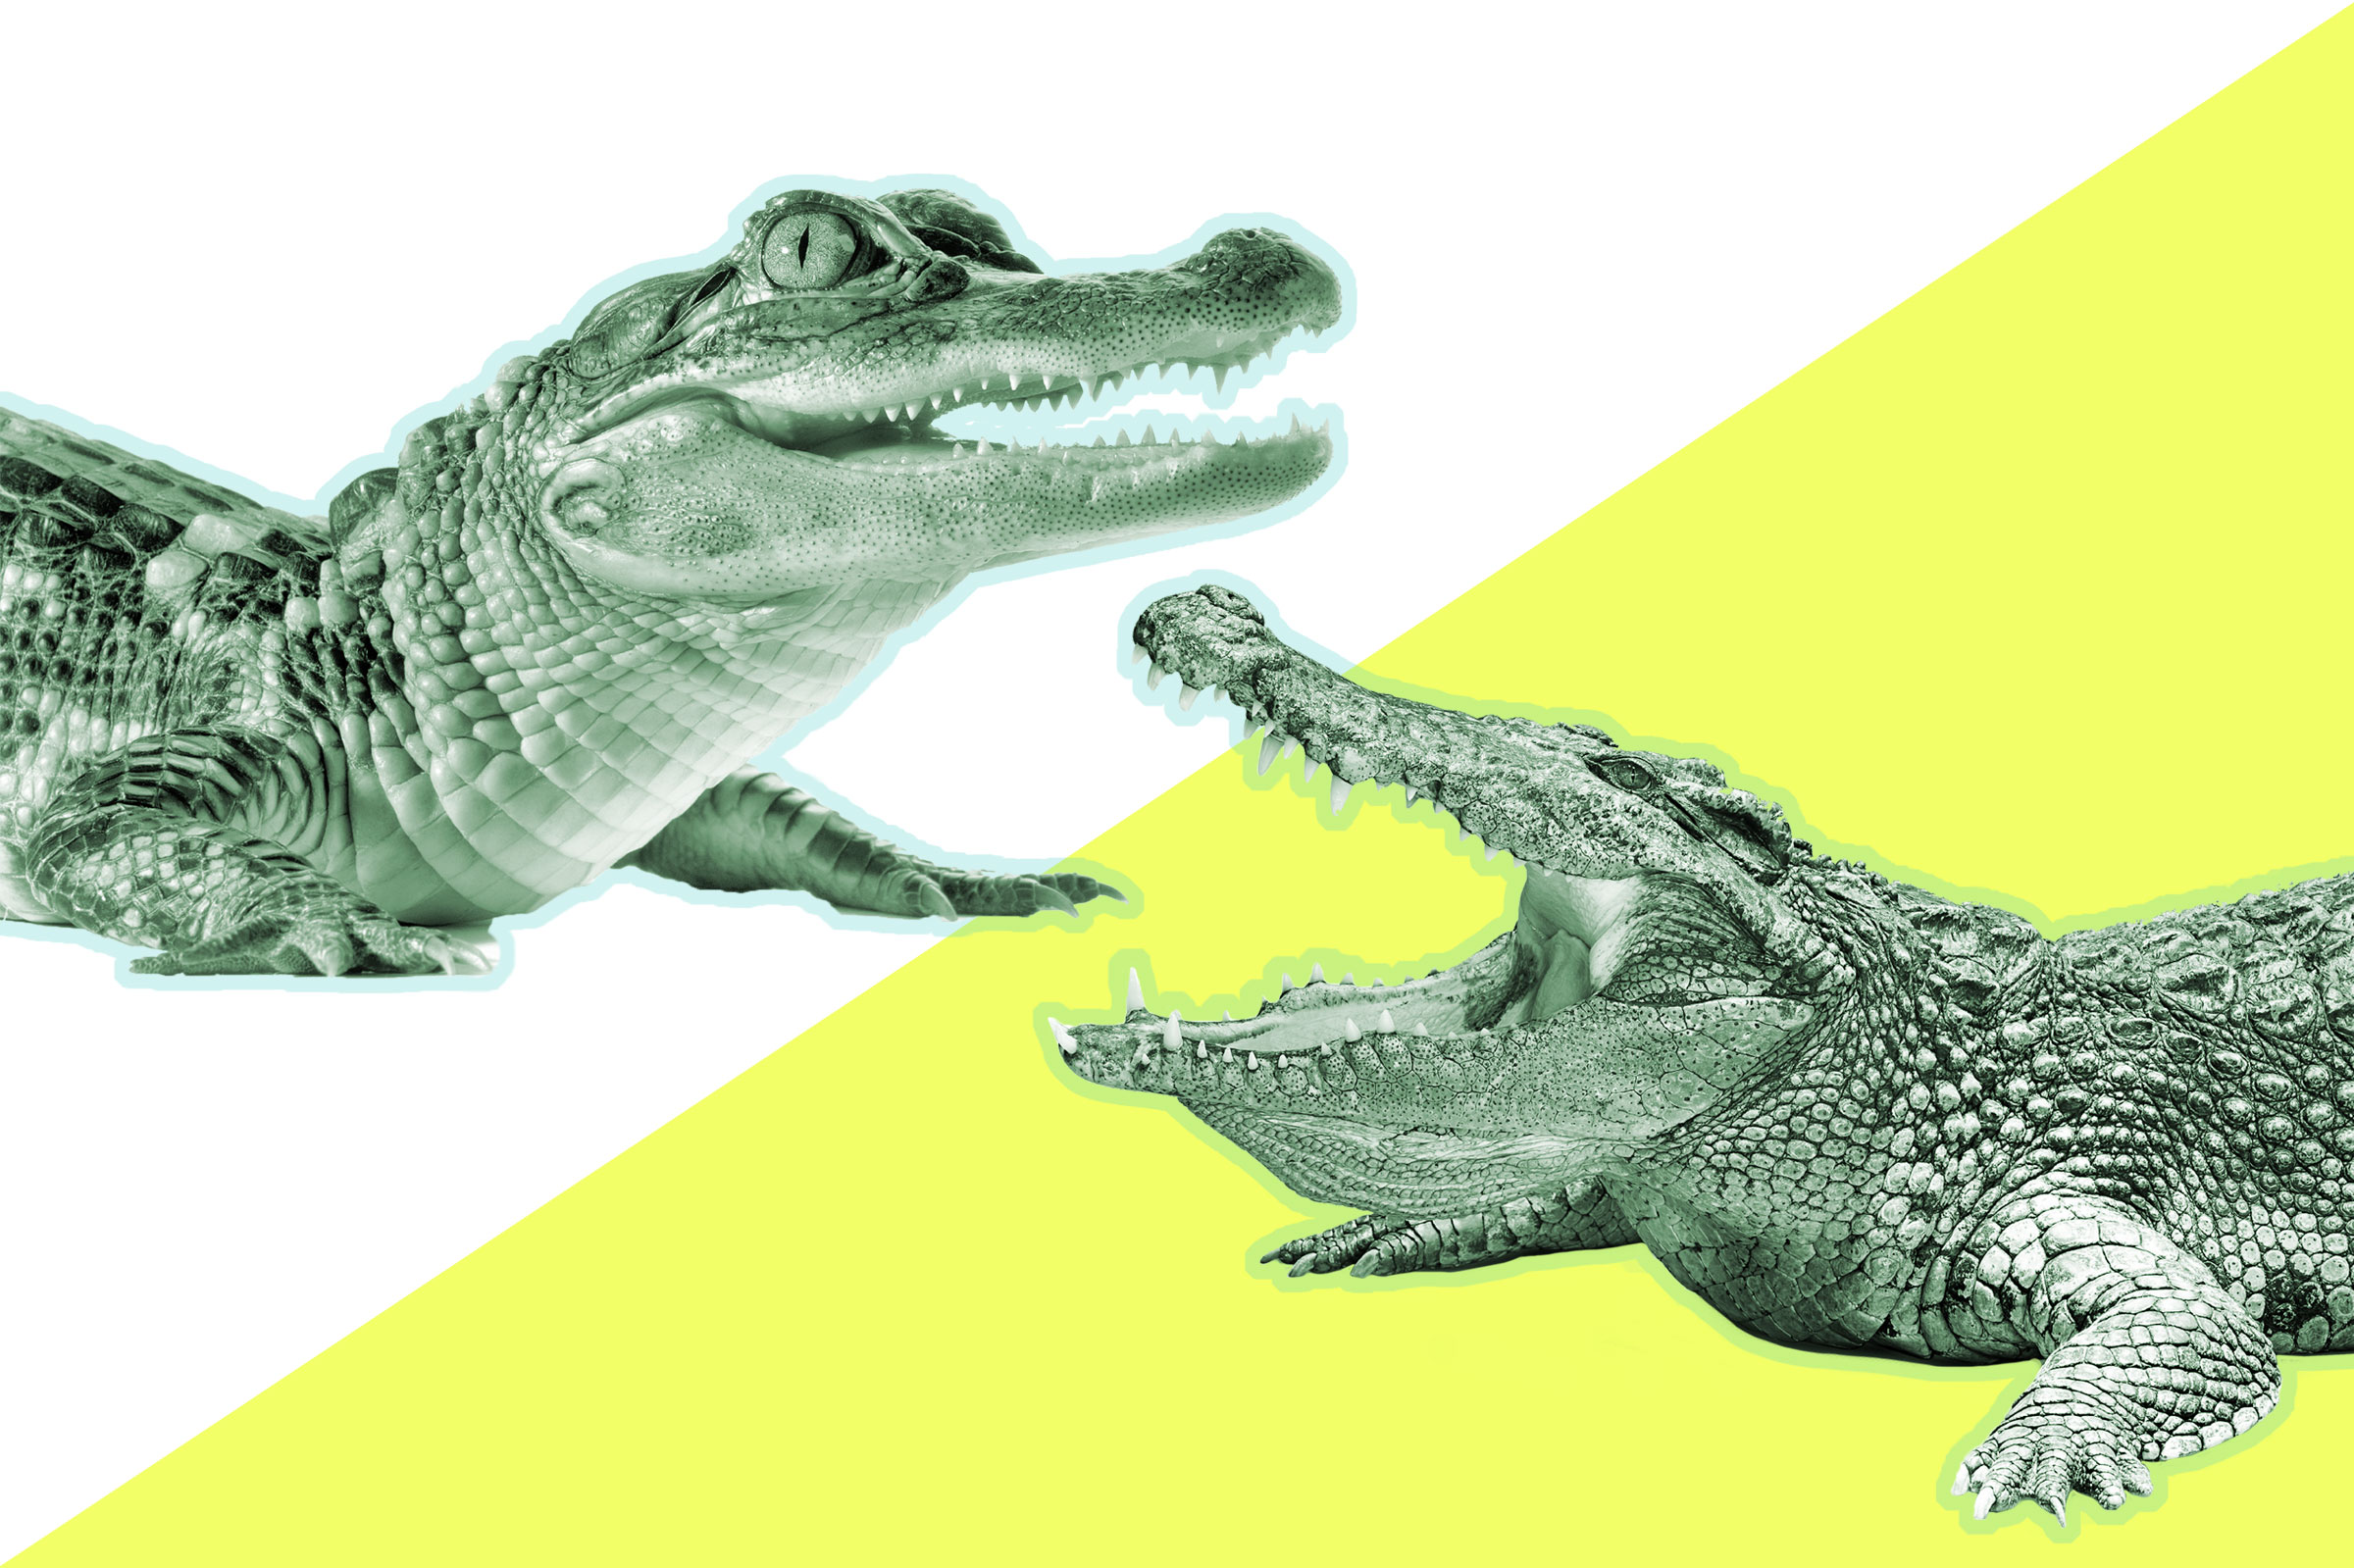 Кожа аллигатора и крокодила отличия